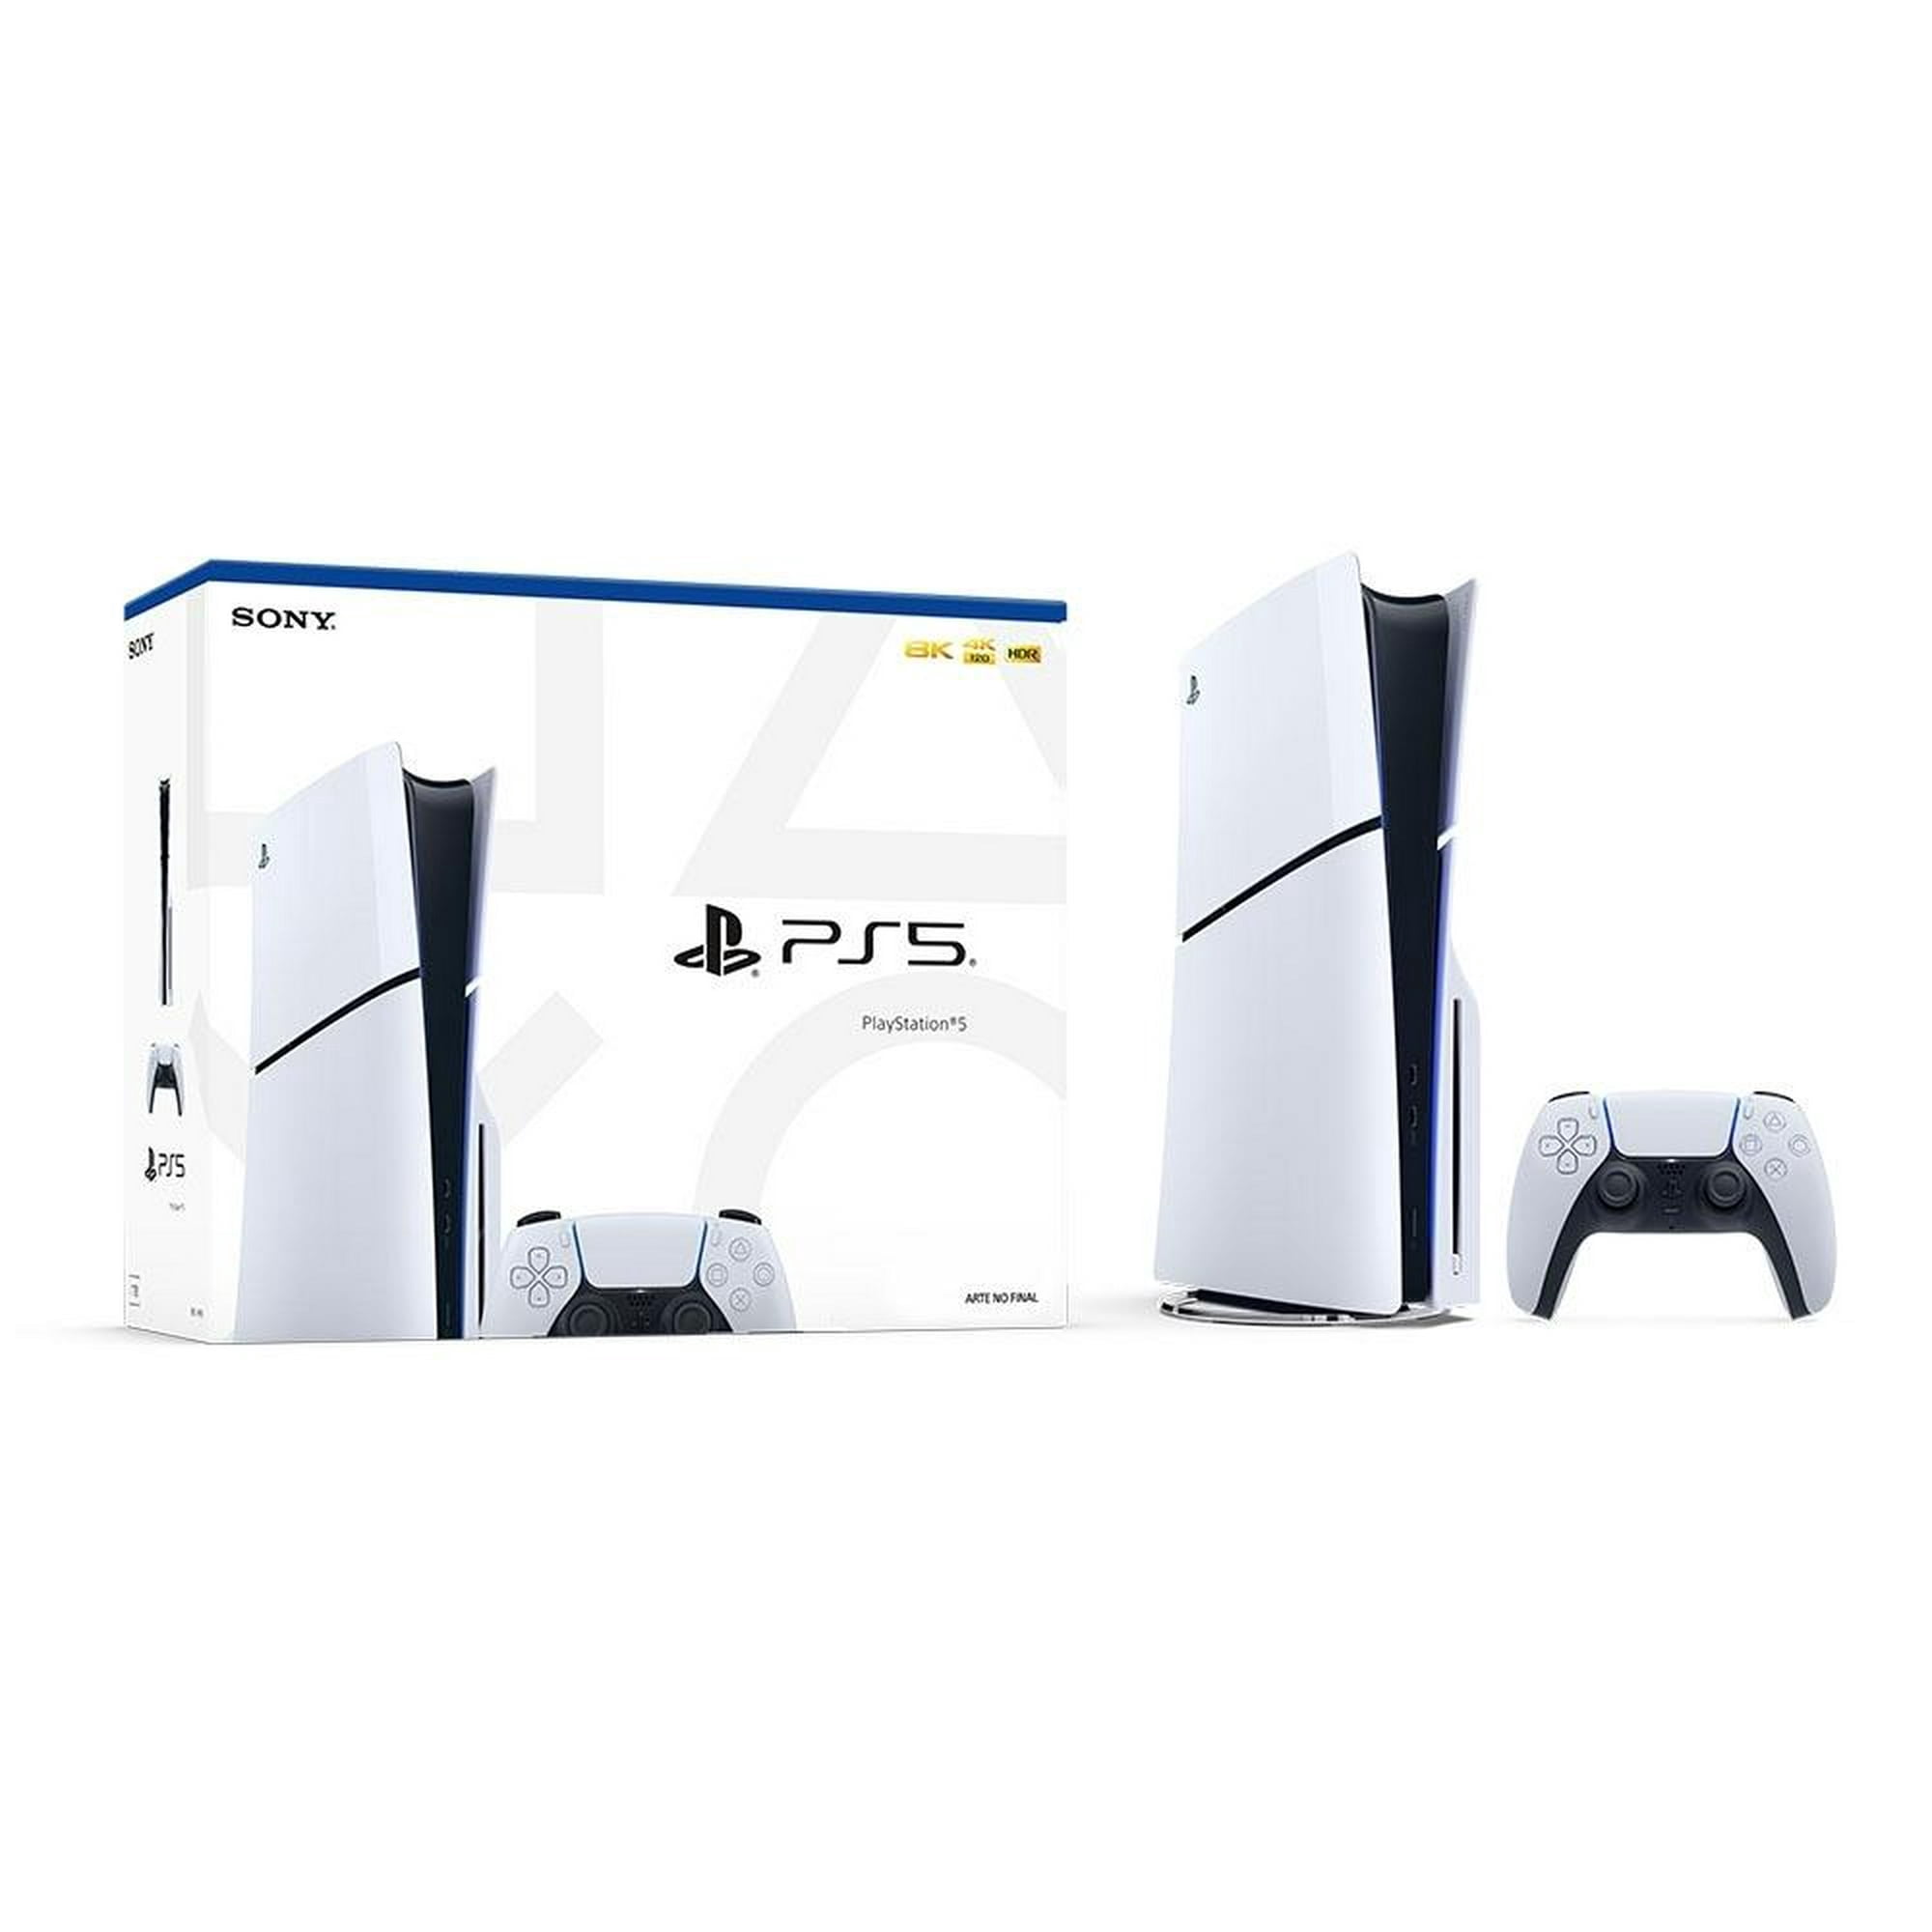 Llegó el PlayStation 5: con un elegante diseño y nuevos videojuegos